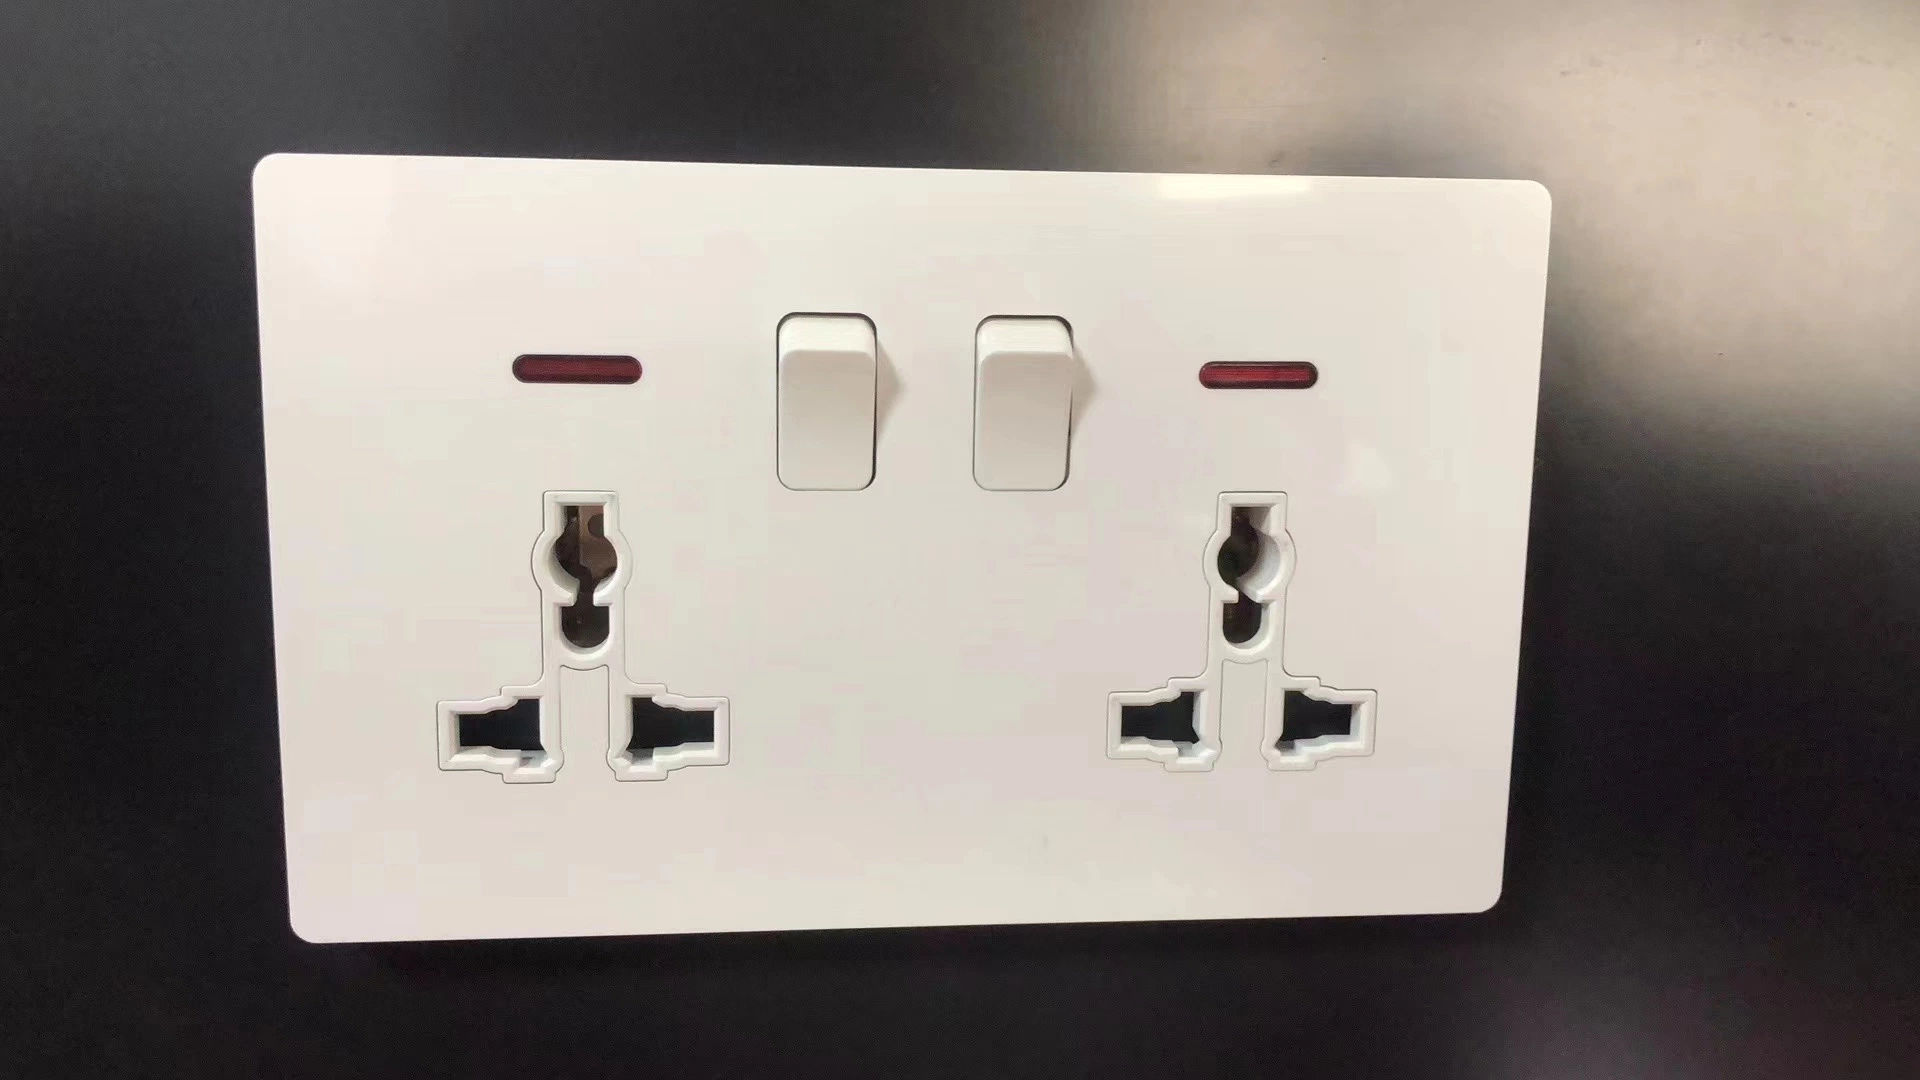 Interrupteur d'éclairage mural Ecorator interrupteur marche/arrêt interrupteur à bascule pour interrupteur à bascule pour LED Et autres lampes